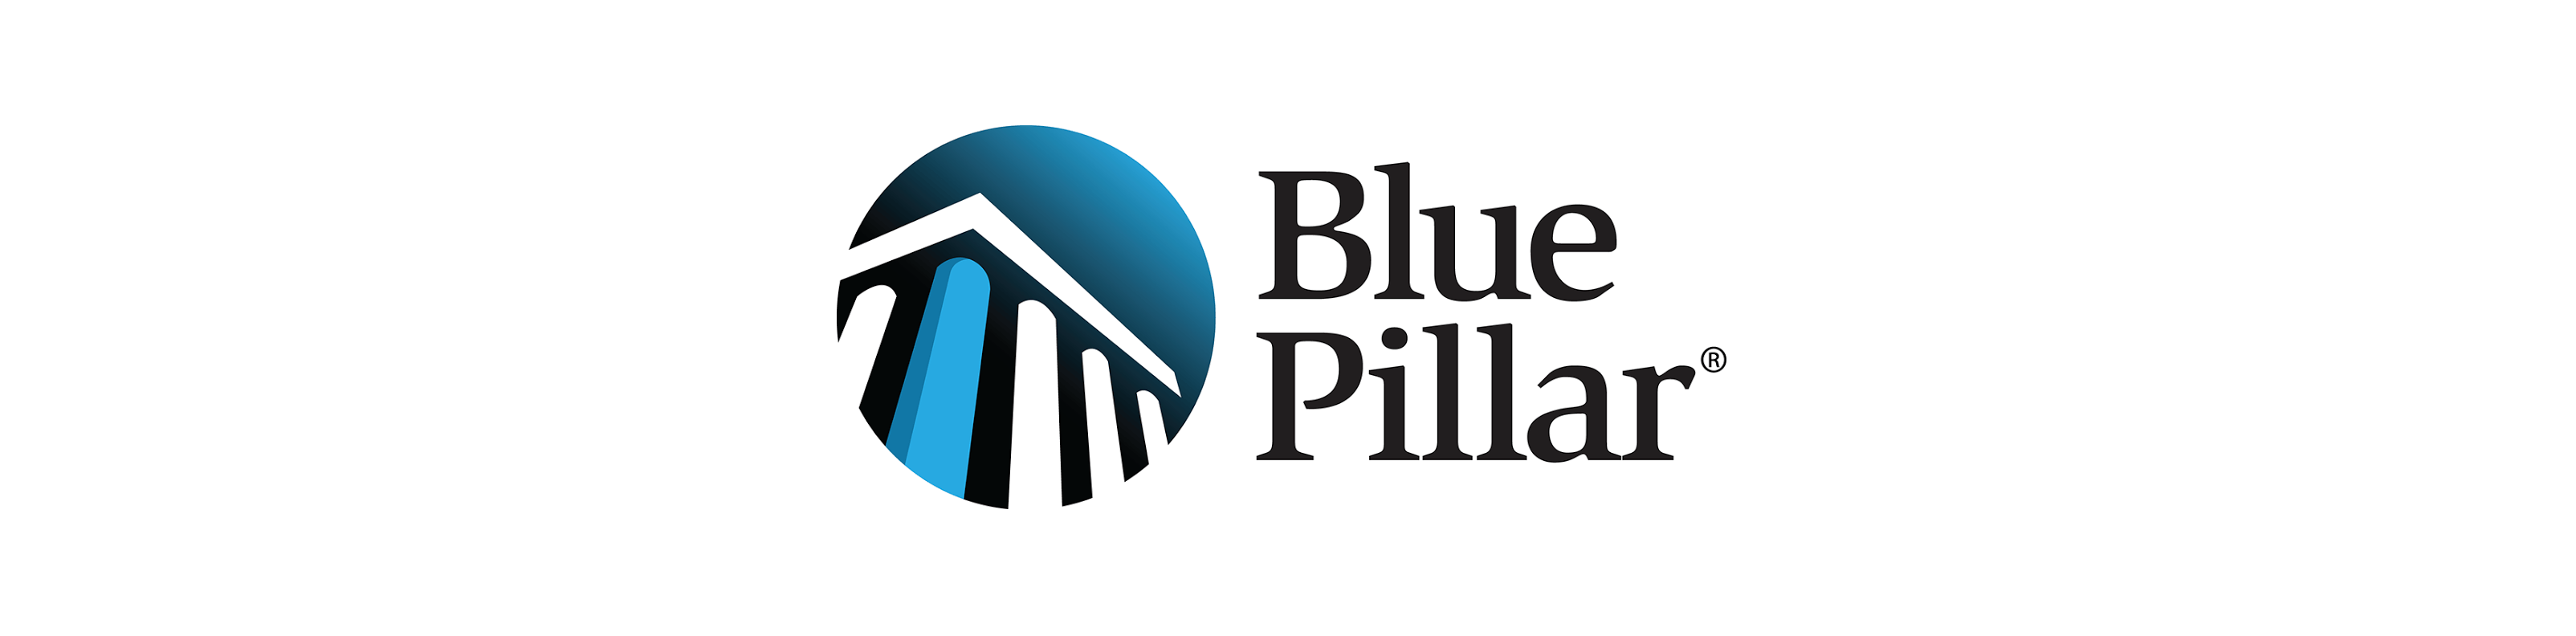 Blue Pillar Logo - Blue Pillar - TechPoint